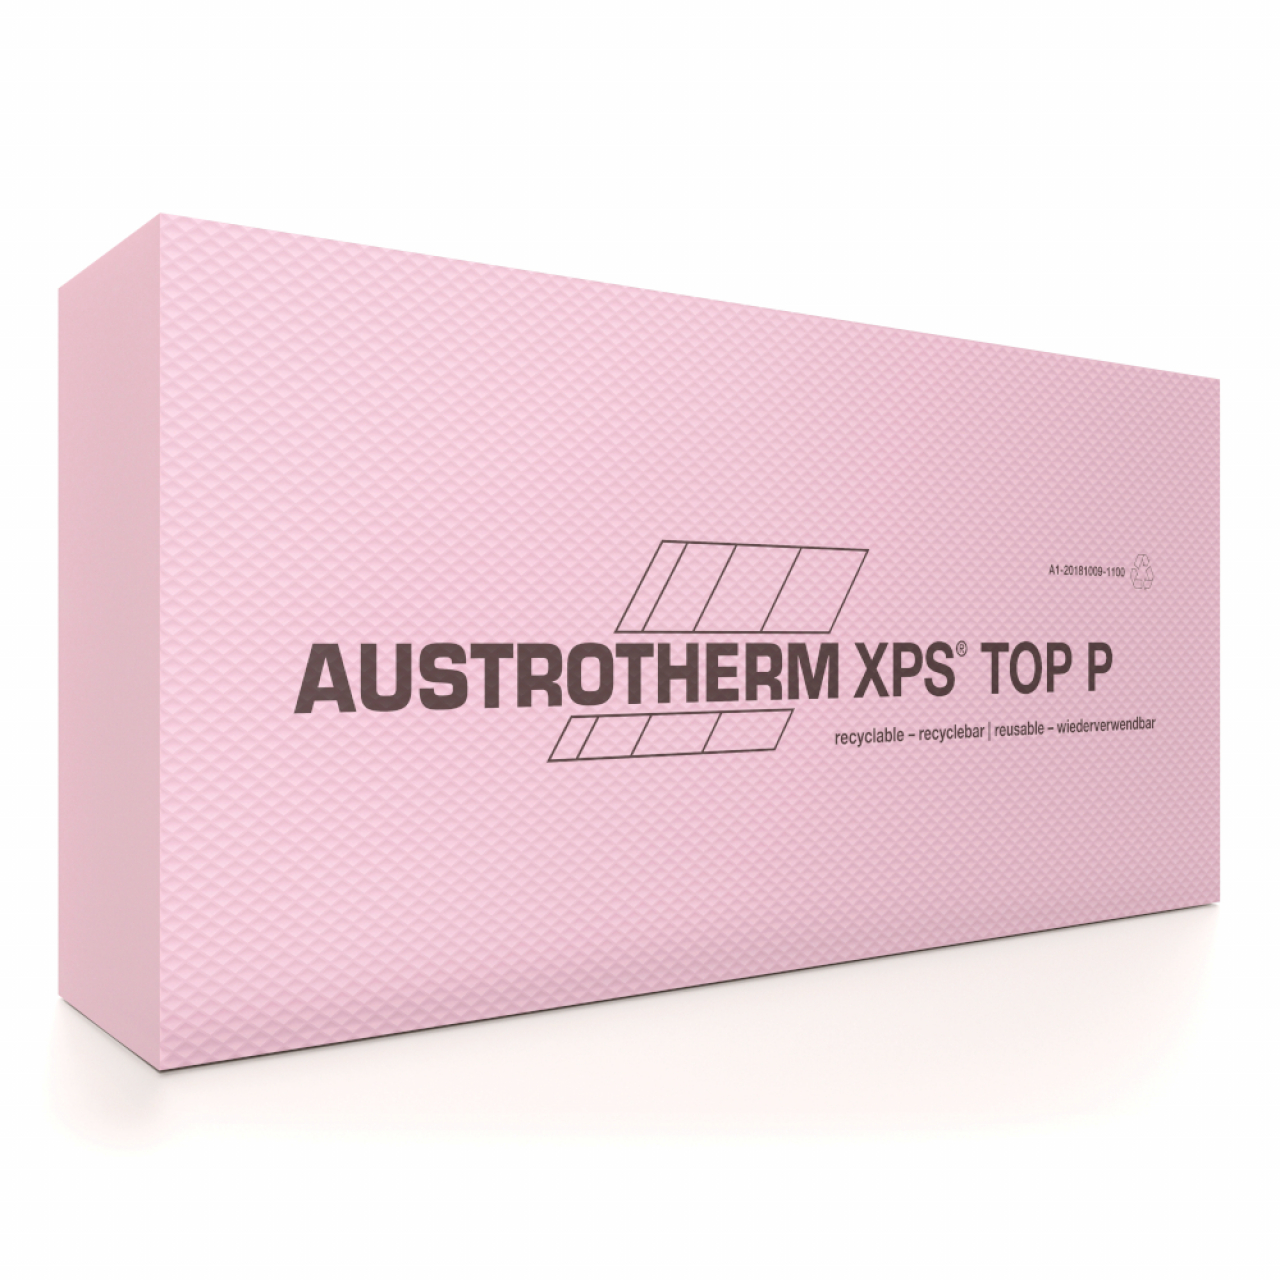 Austrotherm XPS® Extrudált polisztirol termékek különböző méretekben